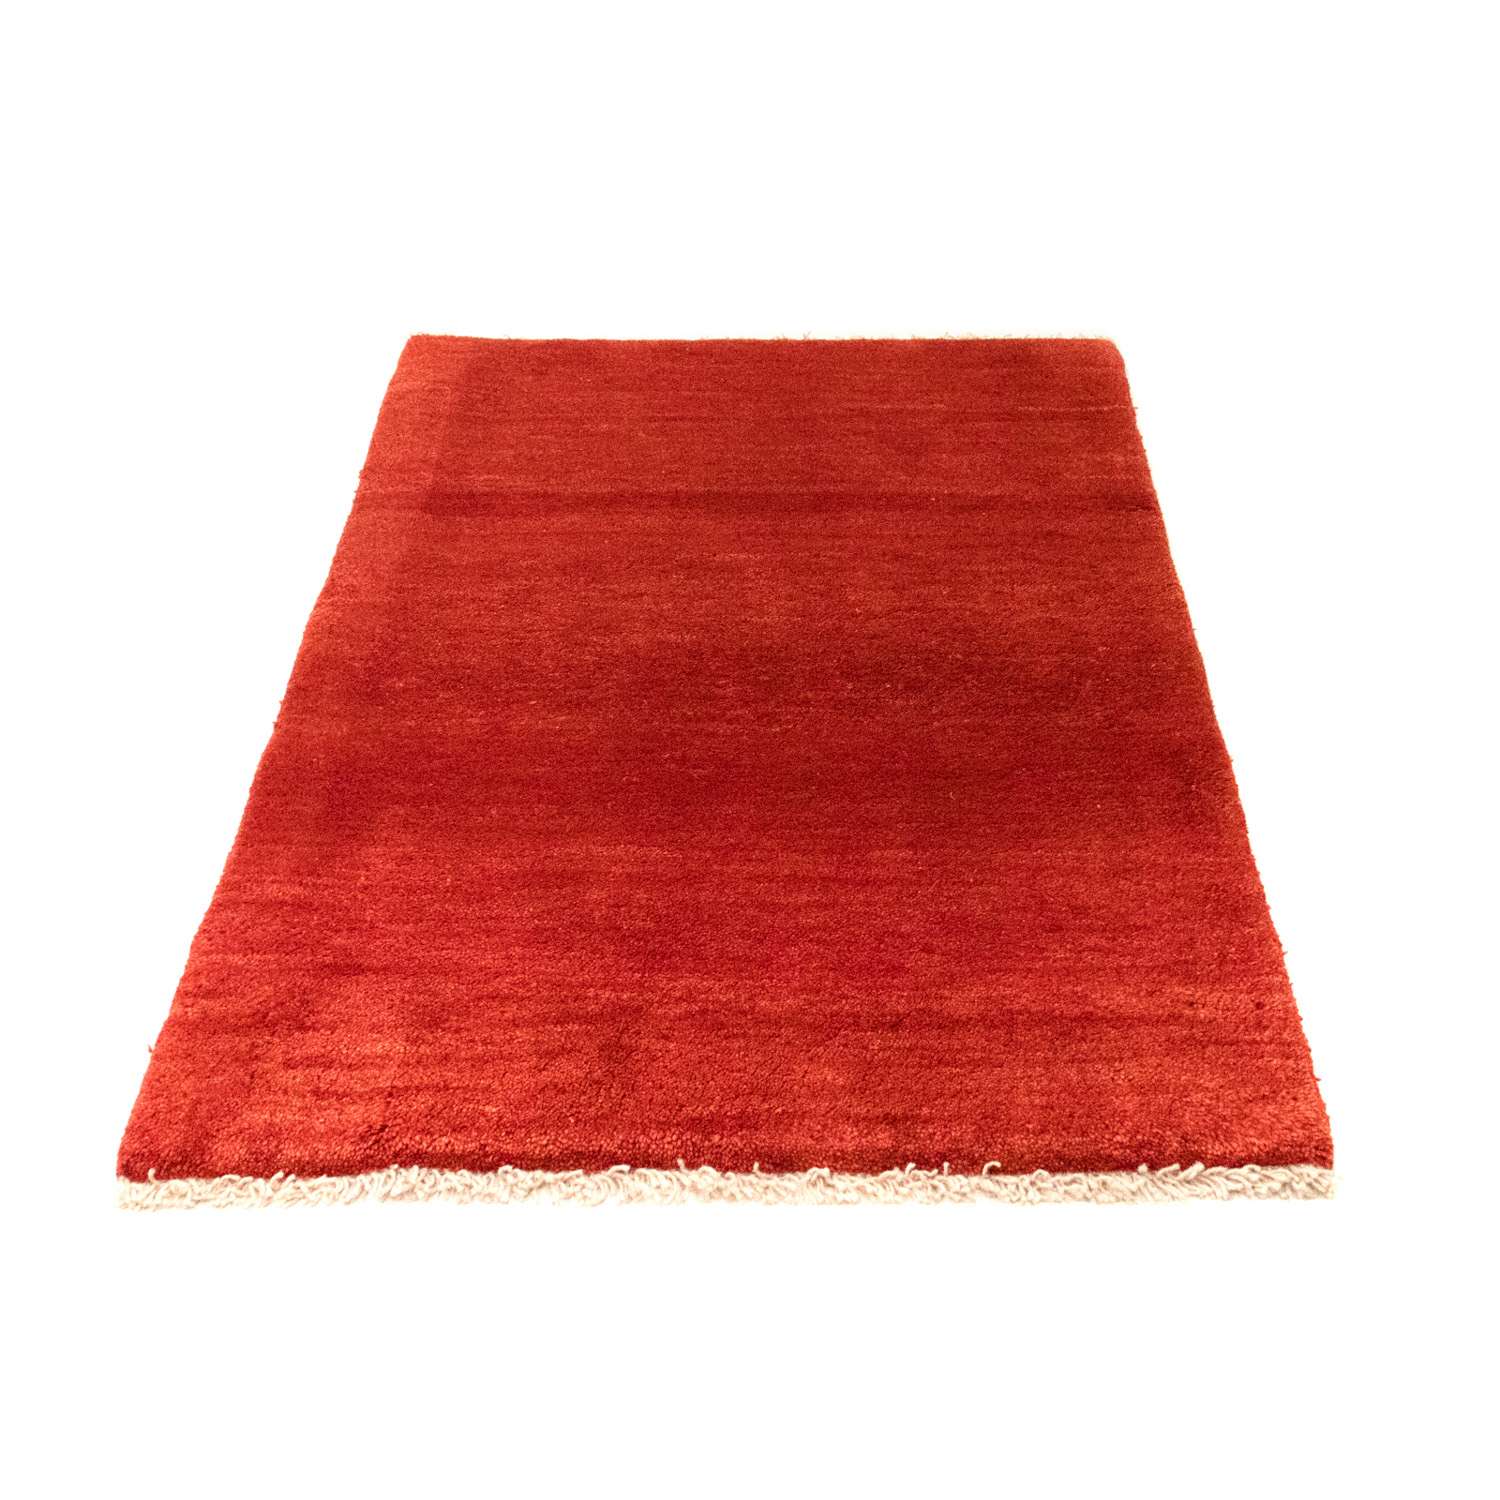 Gabbeh tapijt - Perzisch - 127 x 82 cm - rood